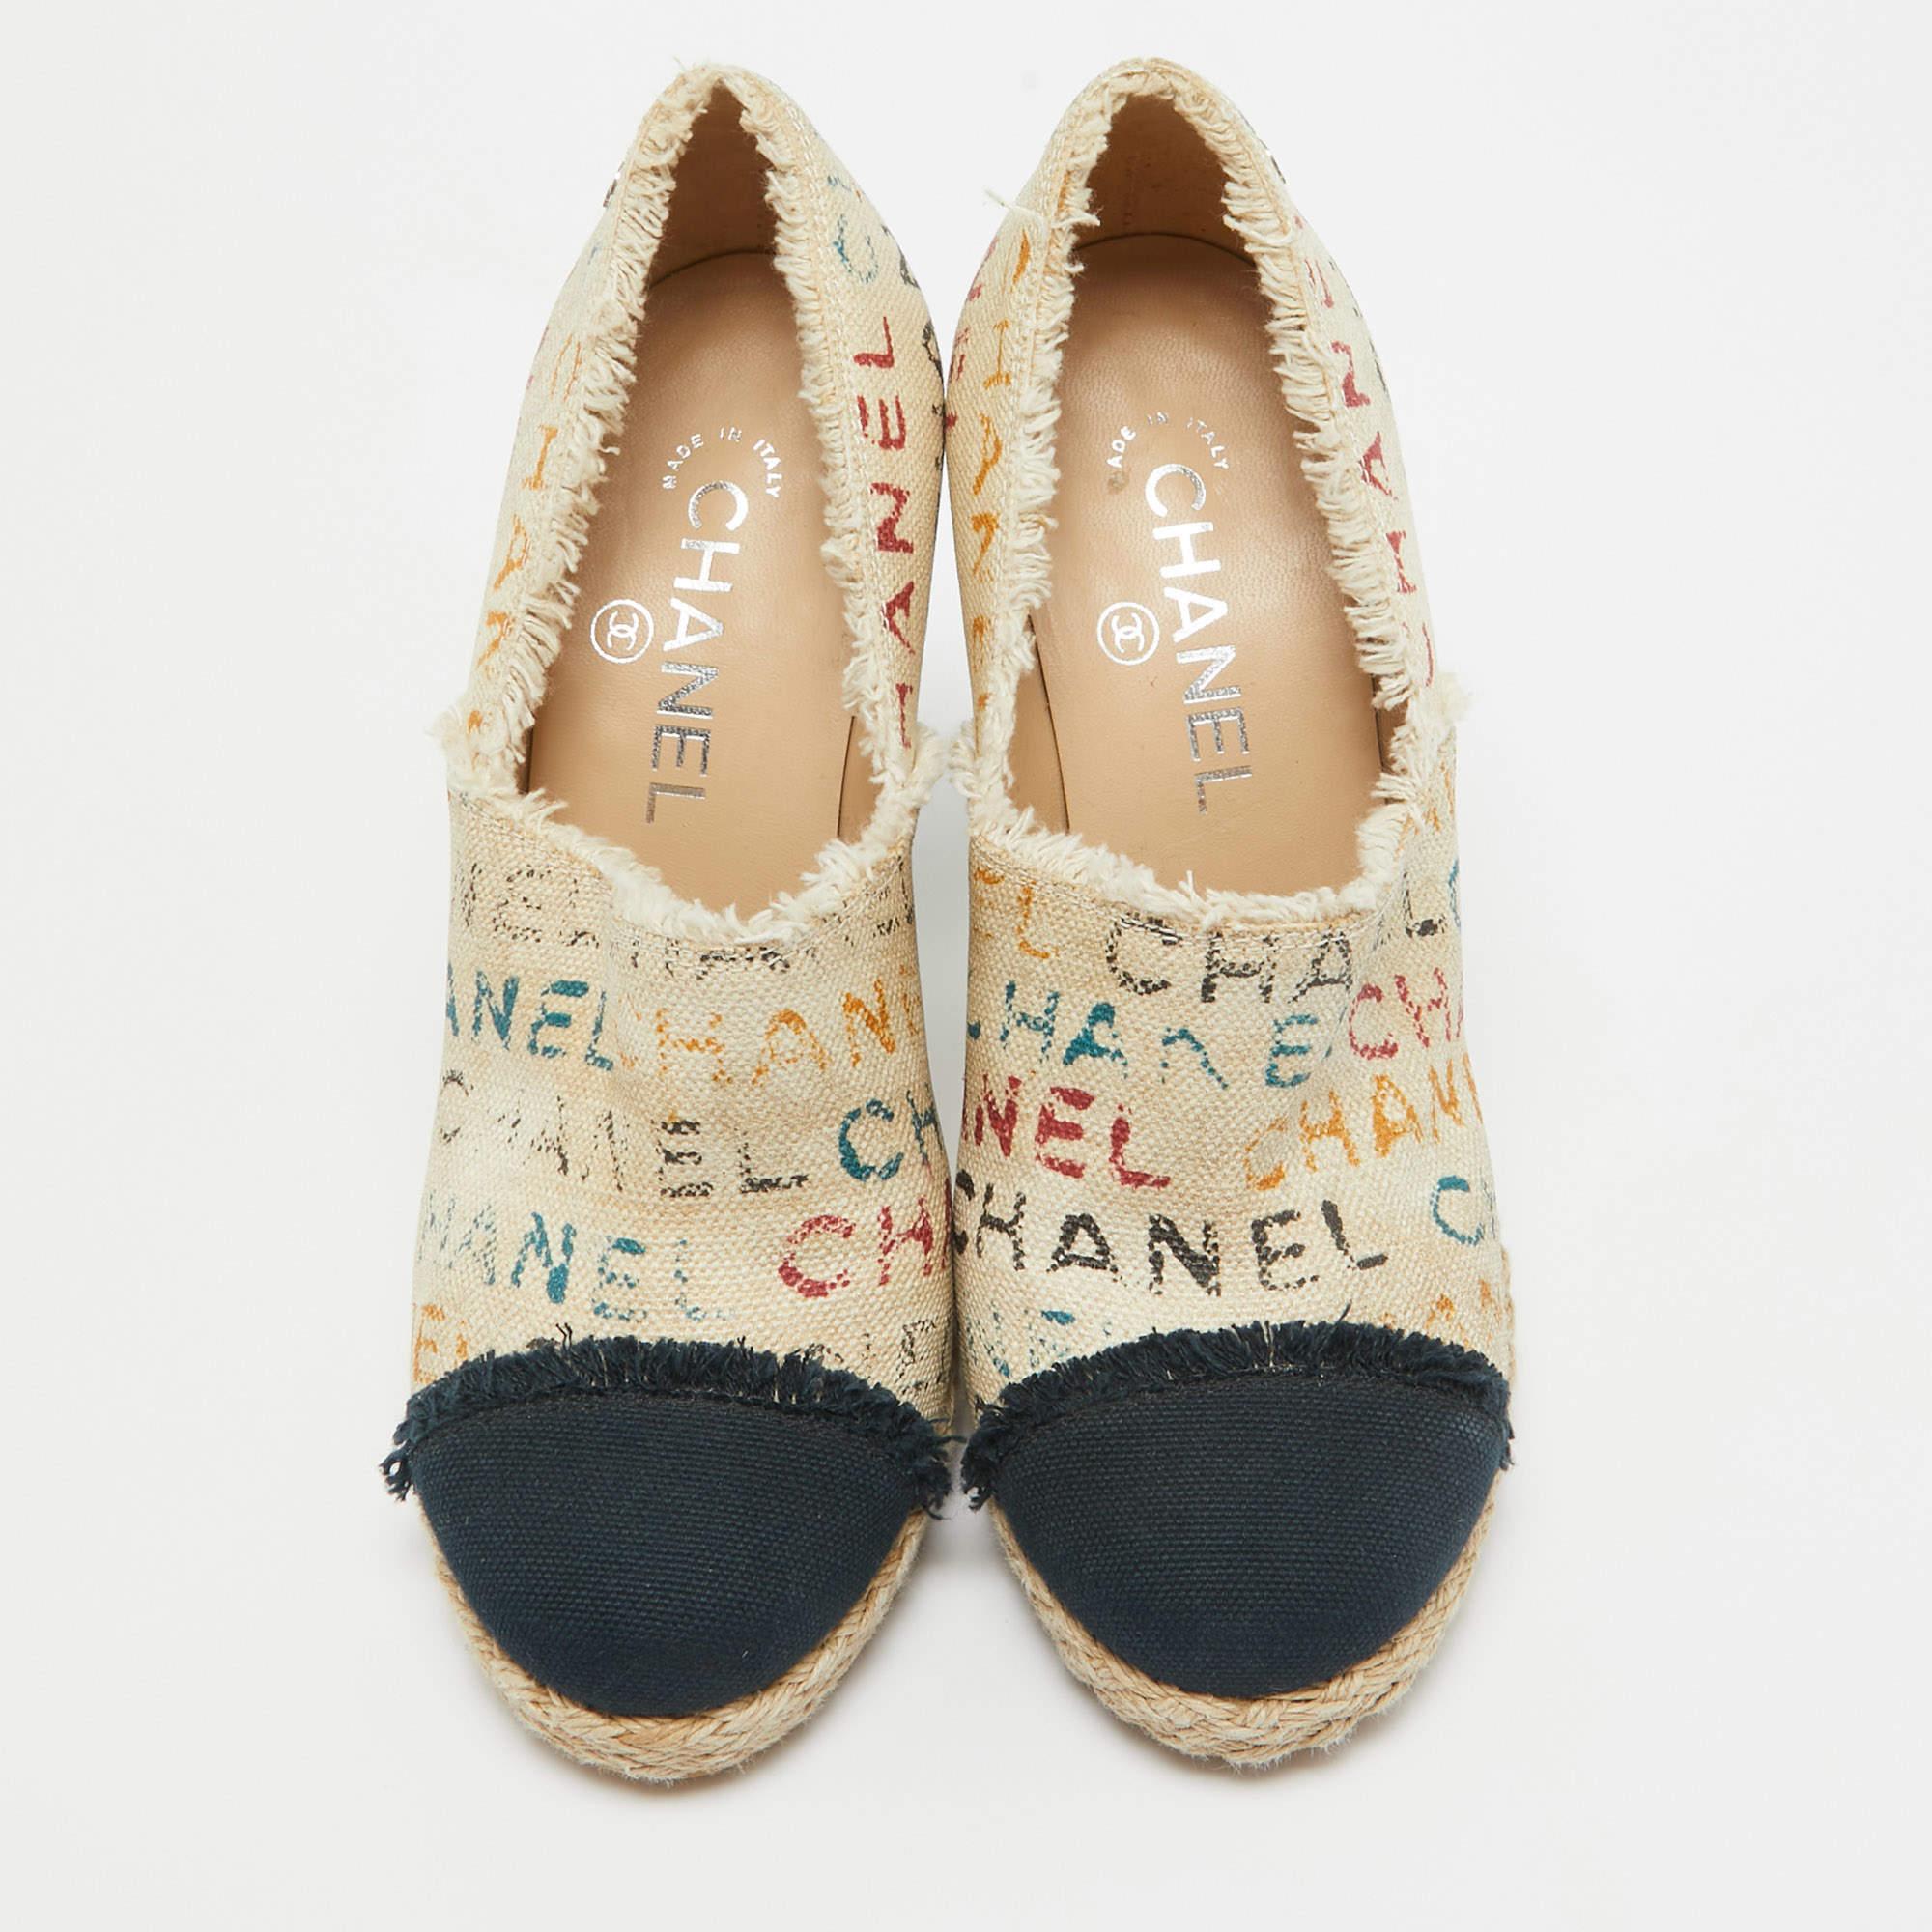 Ces escarpins en espadrille de Chanel sont la signature de votre look. Confectionnées avec soin en toile et ornées de graffitis chics sur le dessus, elles se déclinent dans une jolie nuance de beige contrastée par des bouts de pied bleu marine.